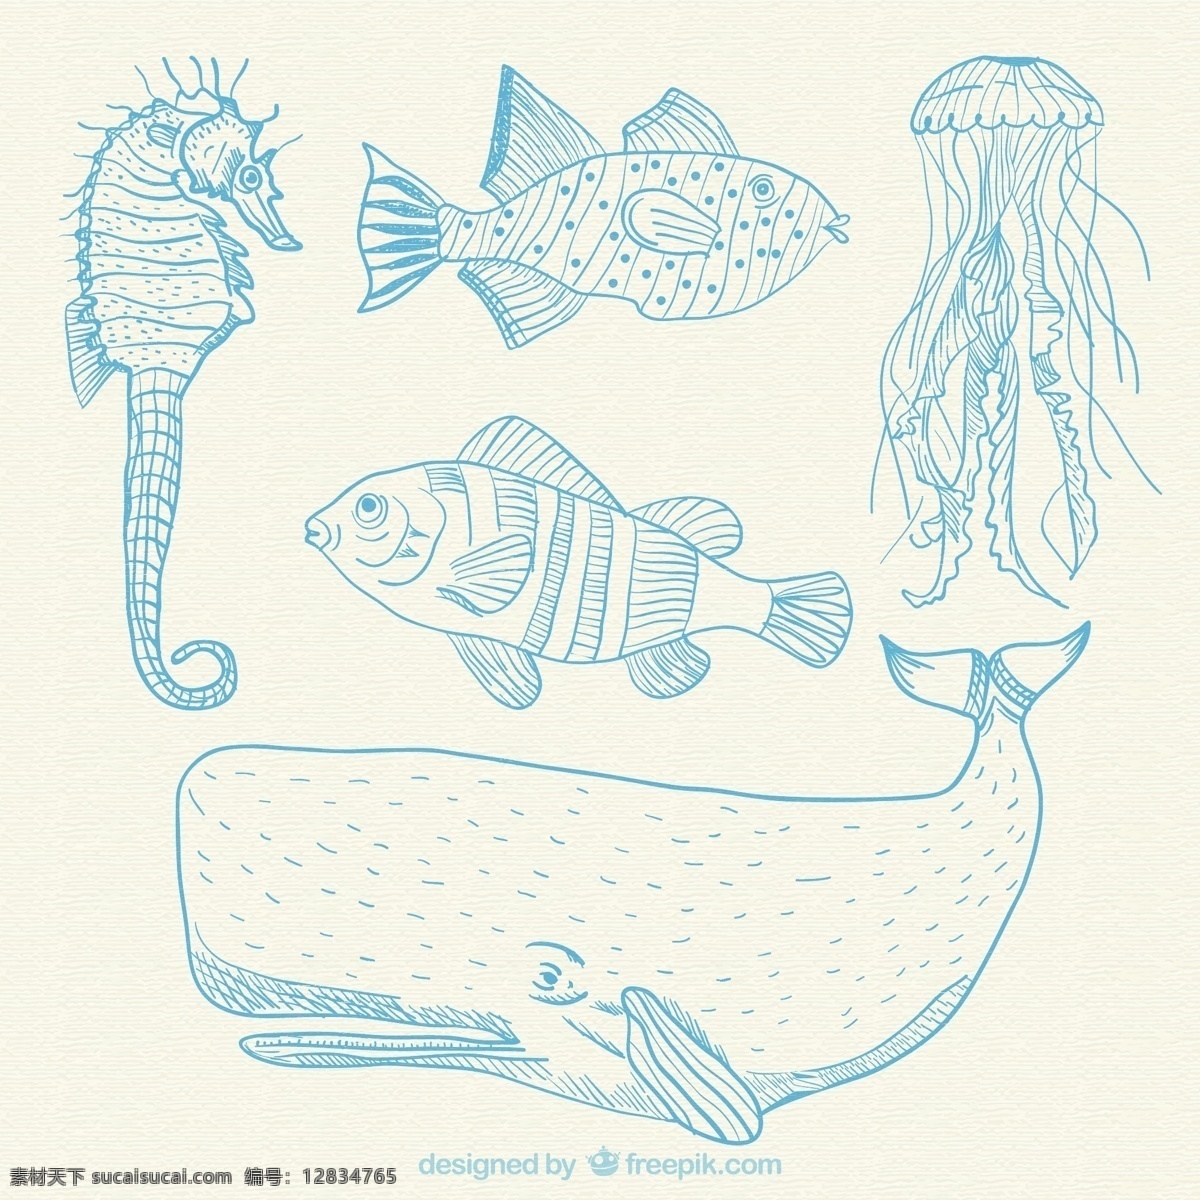 手绘海洋动物 一方面 鱼 自然 海洋 动物 蓝 手绘 绘画 鲸鱼 手工绘图 绘制 海马 水母 粗略 白色